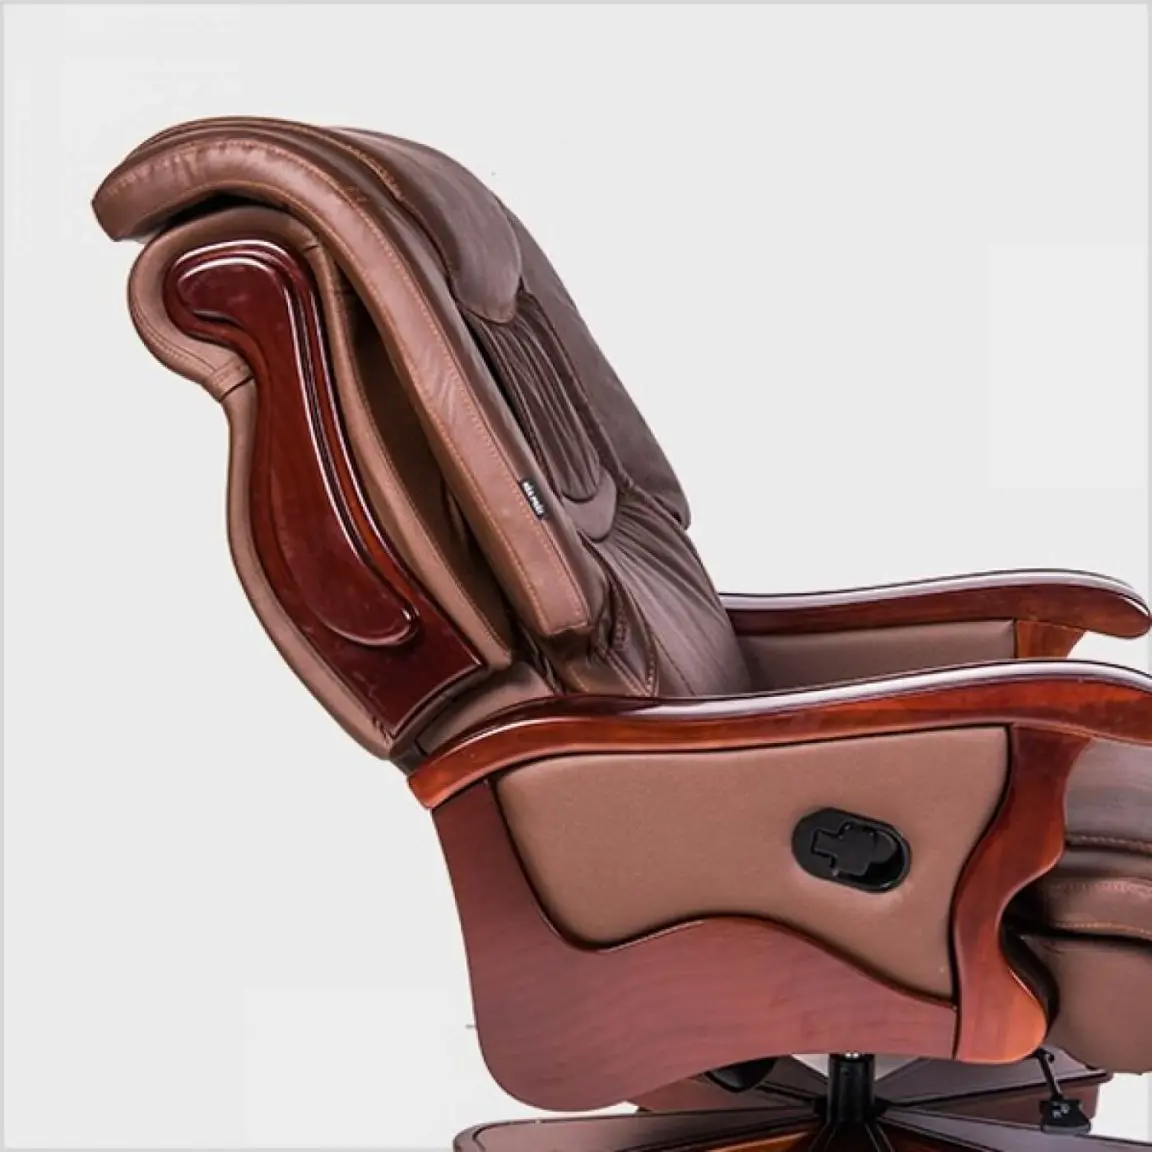 Phần lưng ghế gỗ giám đốc TQ20 thiết kế độ cong phù hợp, nâng đỡ cột sống người dùng